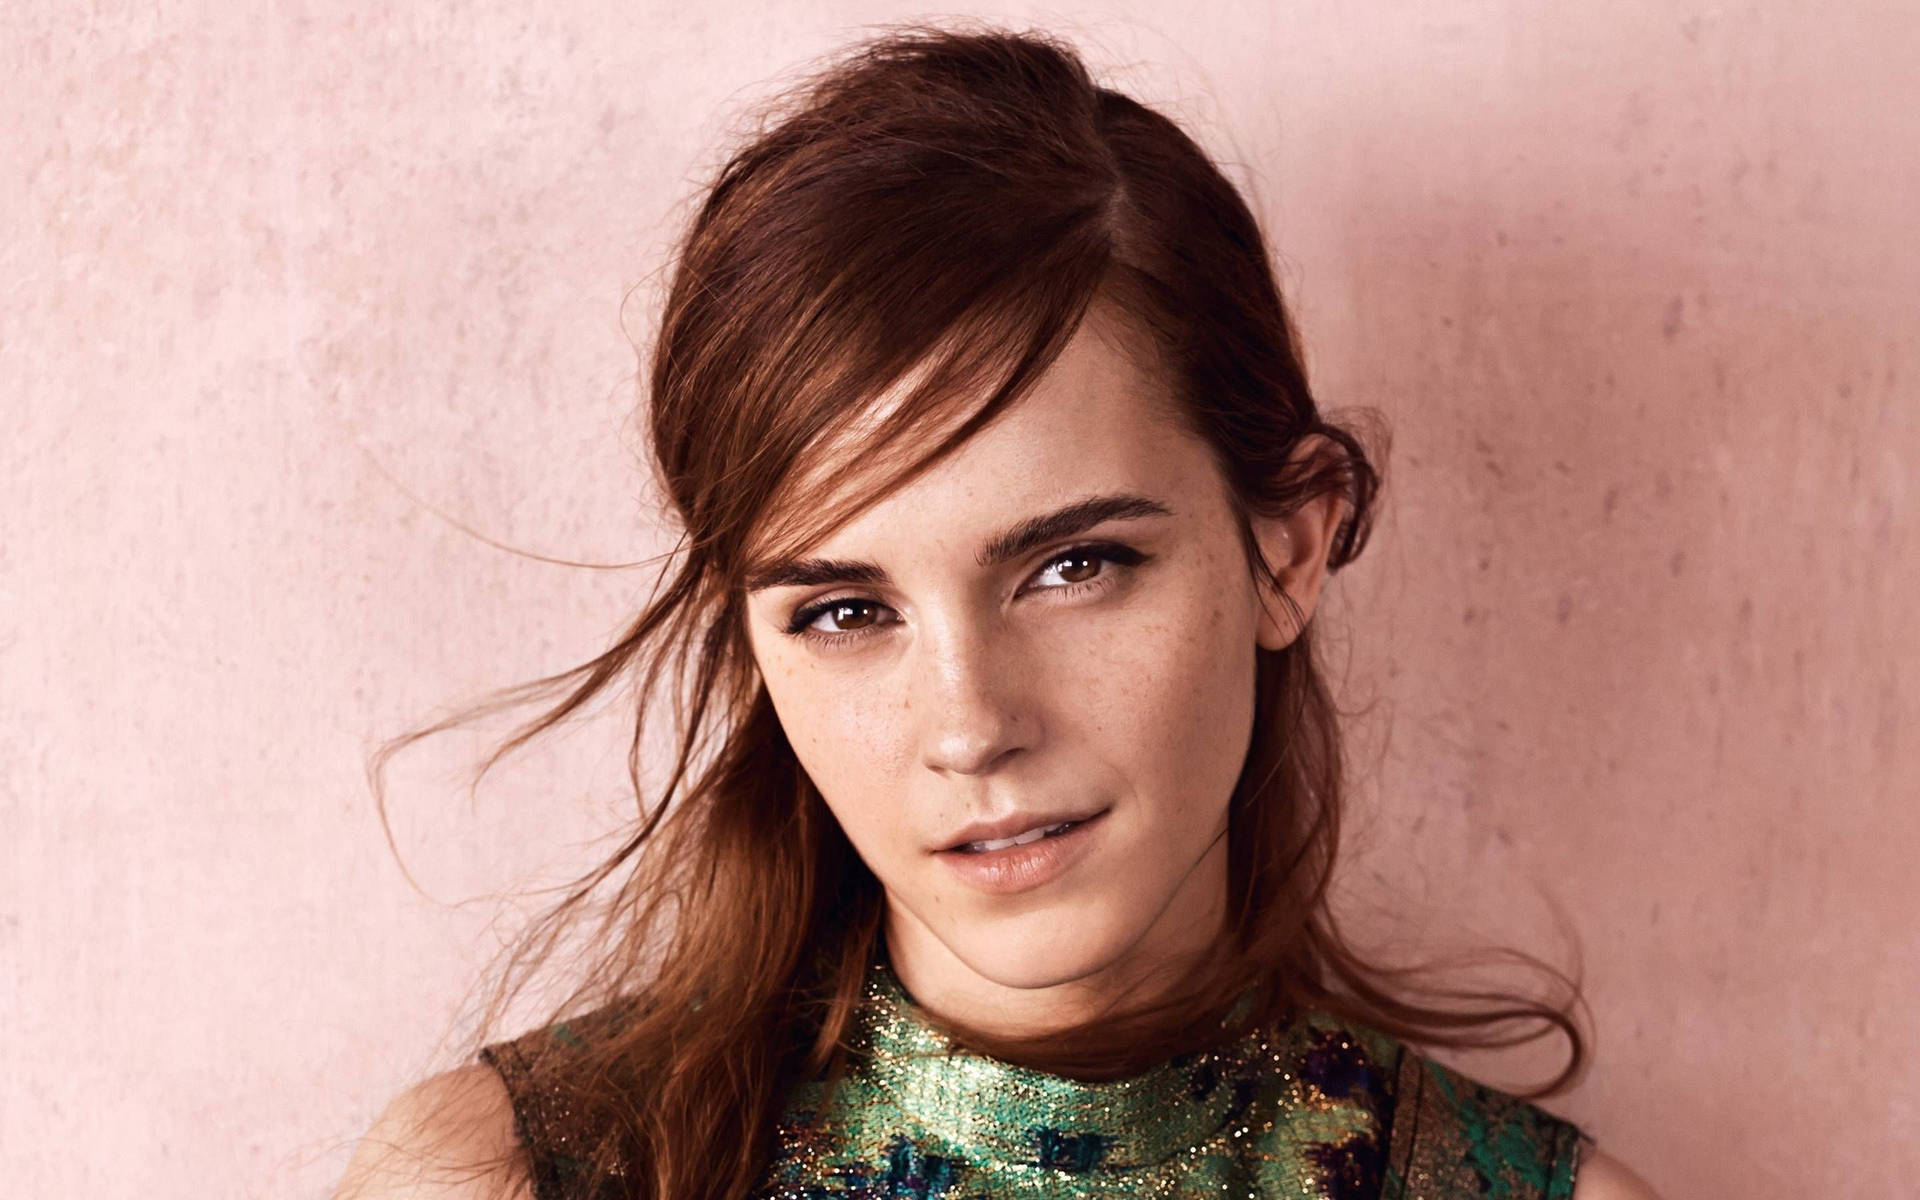 Cute Emma Watson Portrait